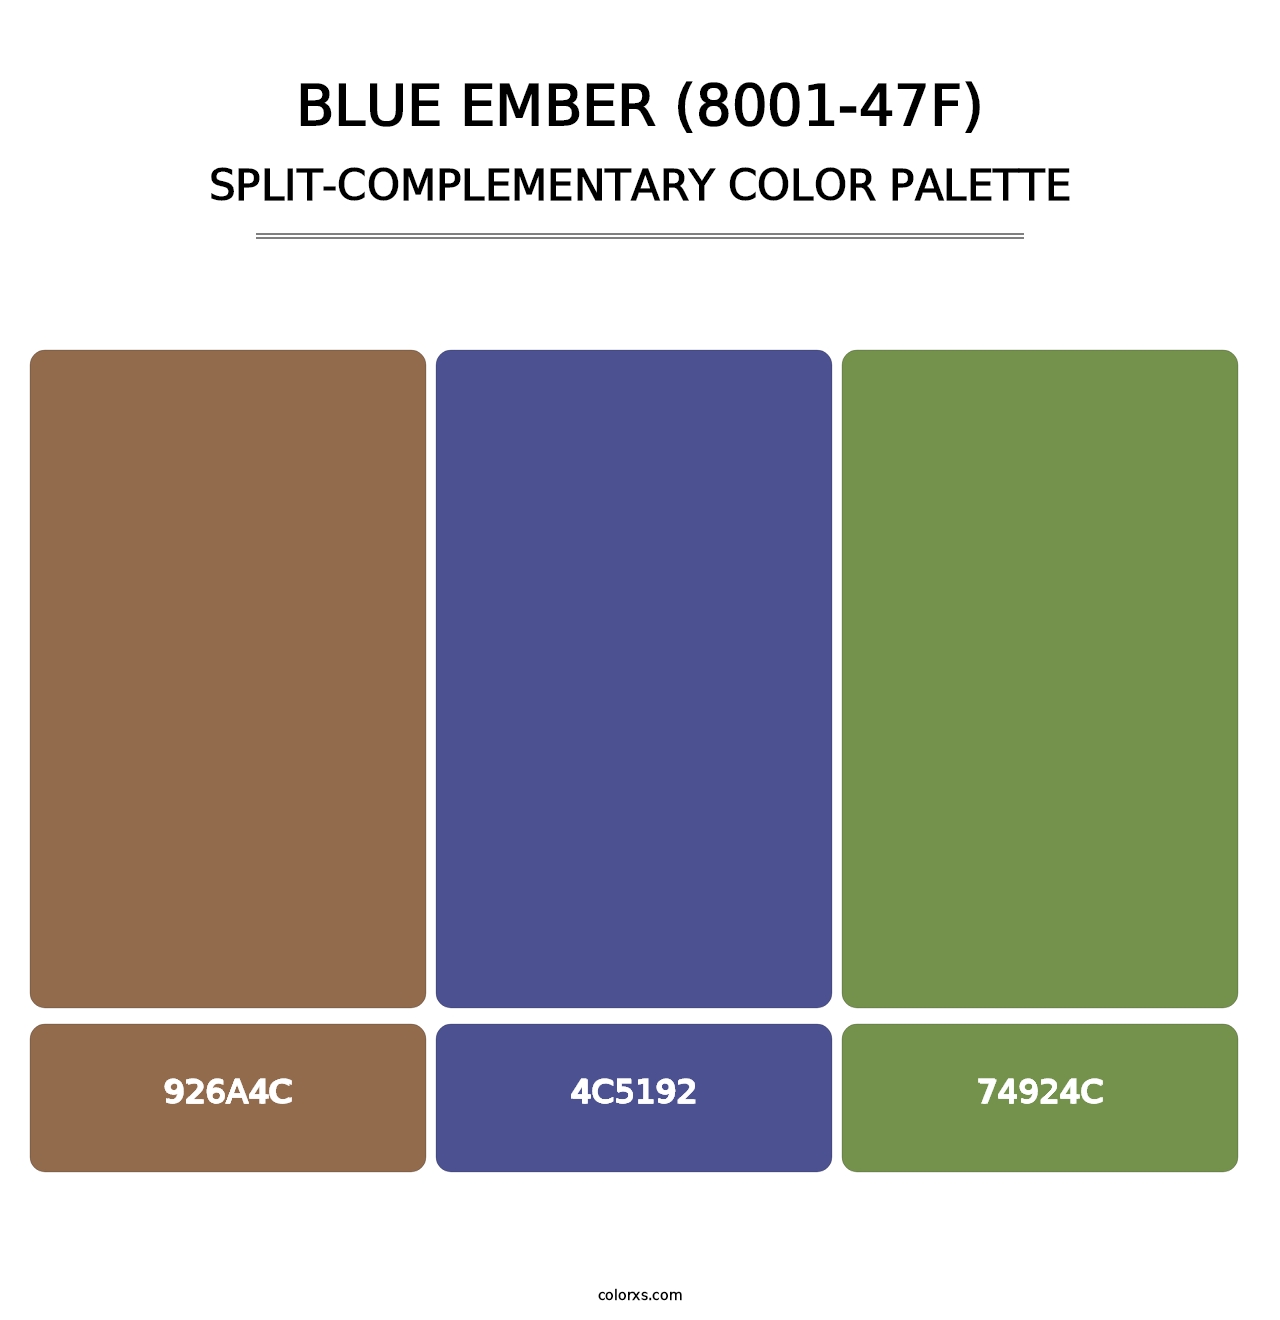 Blue Ember (8001-47F) - Split-Complementary Color Palette